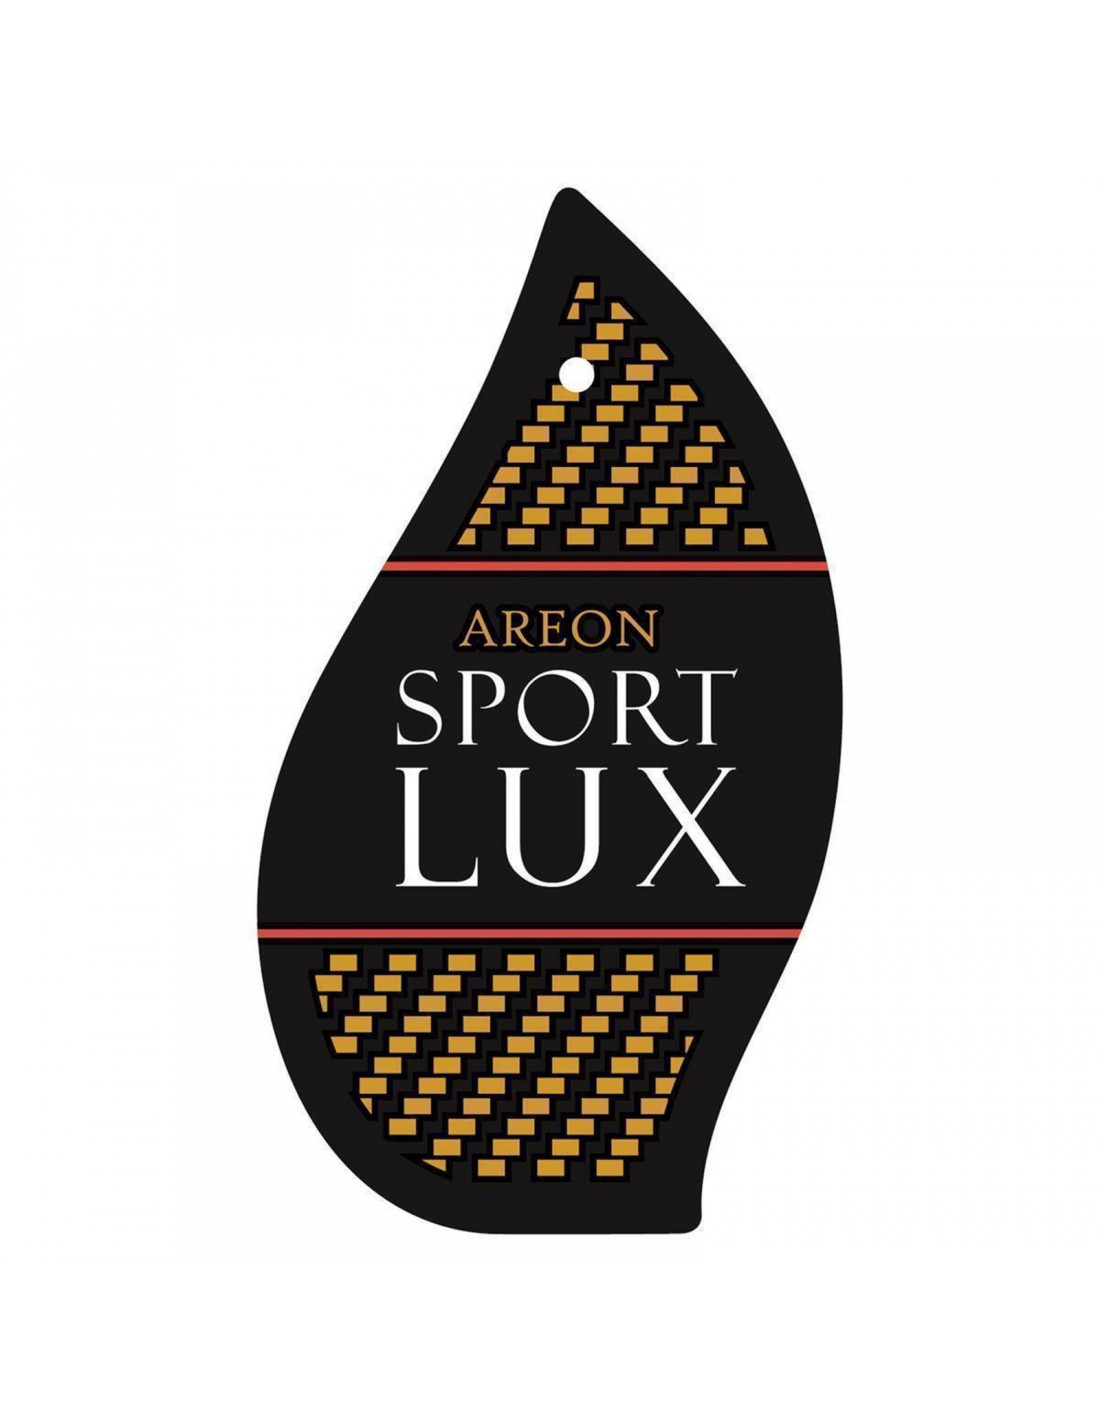 Autoduft Areon SPORT LUX Gold   die sportliche Autoduft  Parfümerie